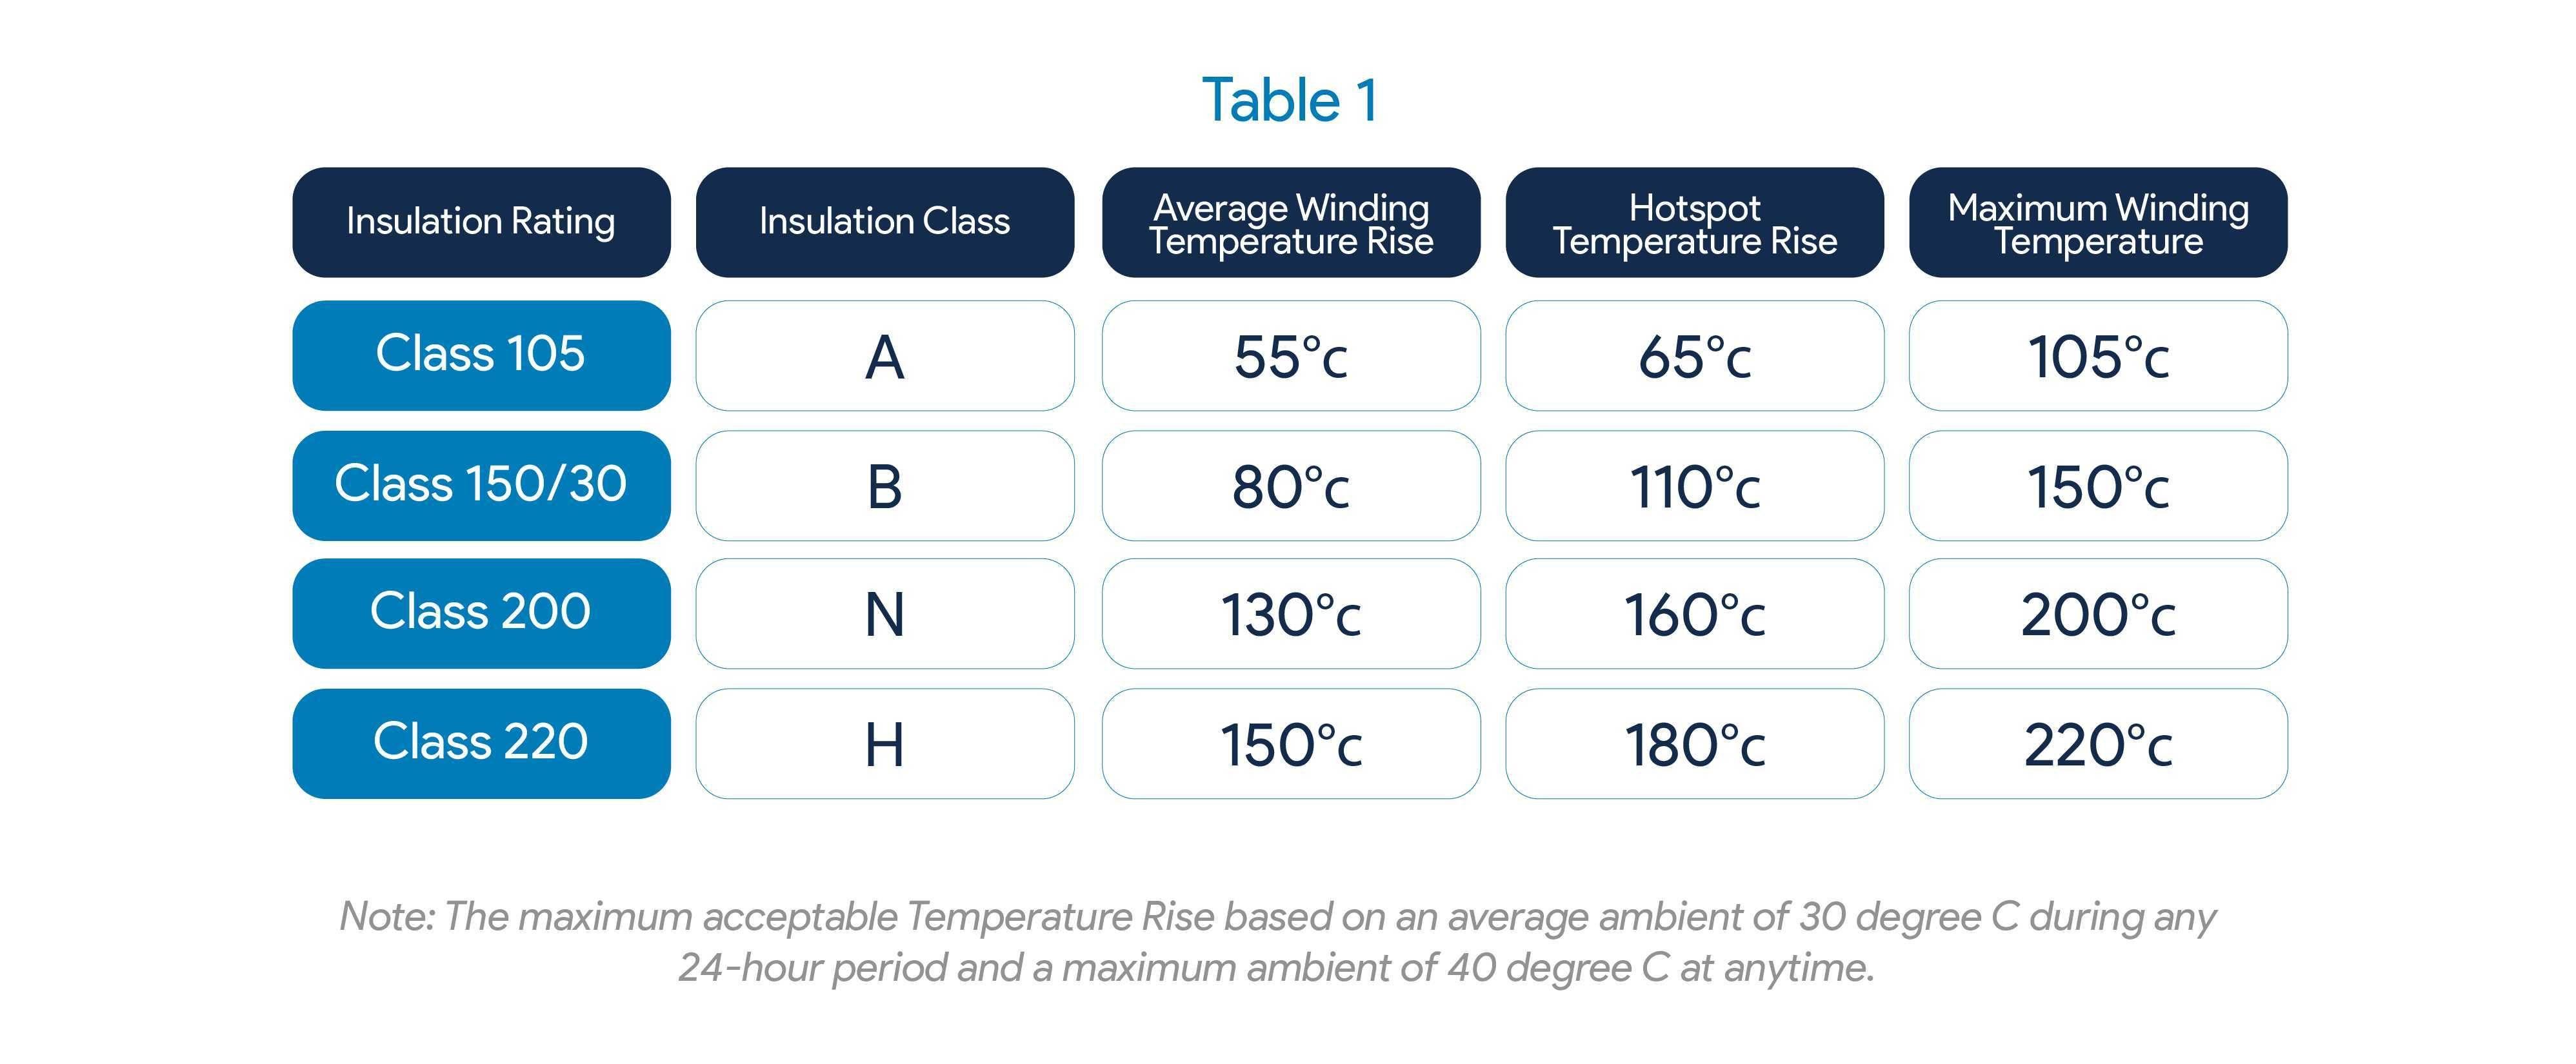 Insulation Rating & Temperature Rise